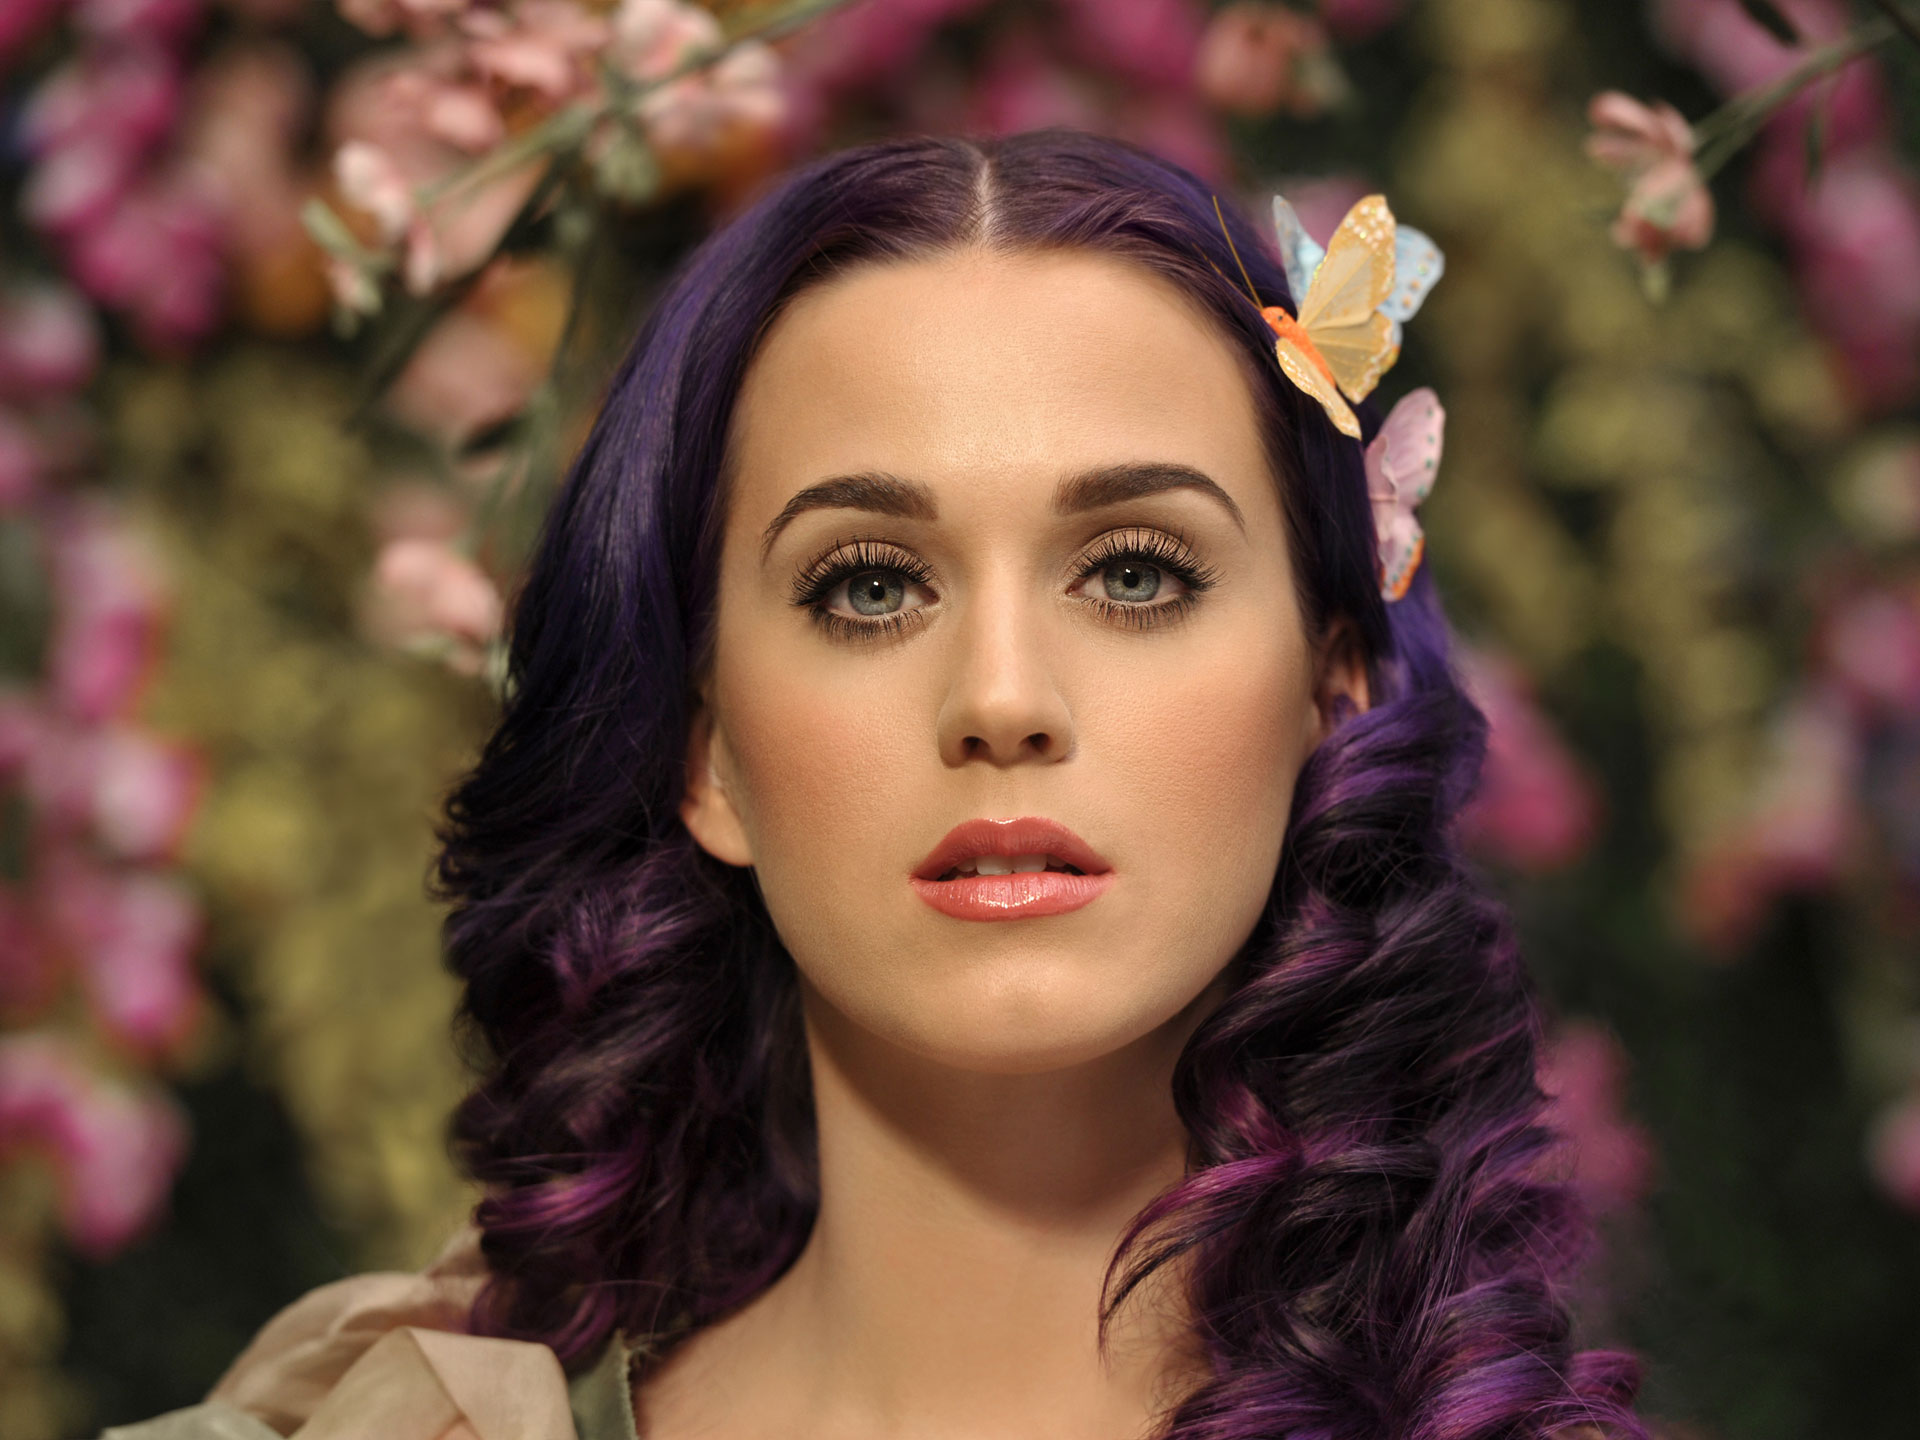 Katy Perry dio declaraciones sobre el Hombre que creyó haber salido con ella por 6 años